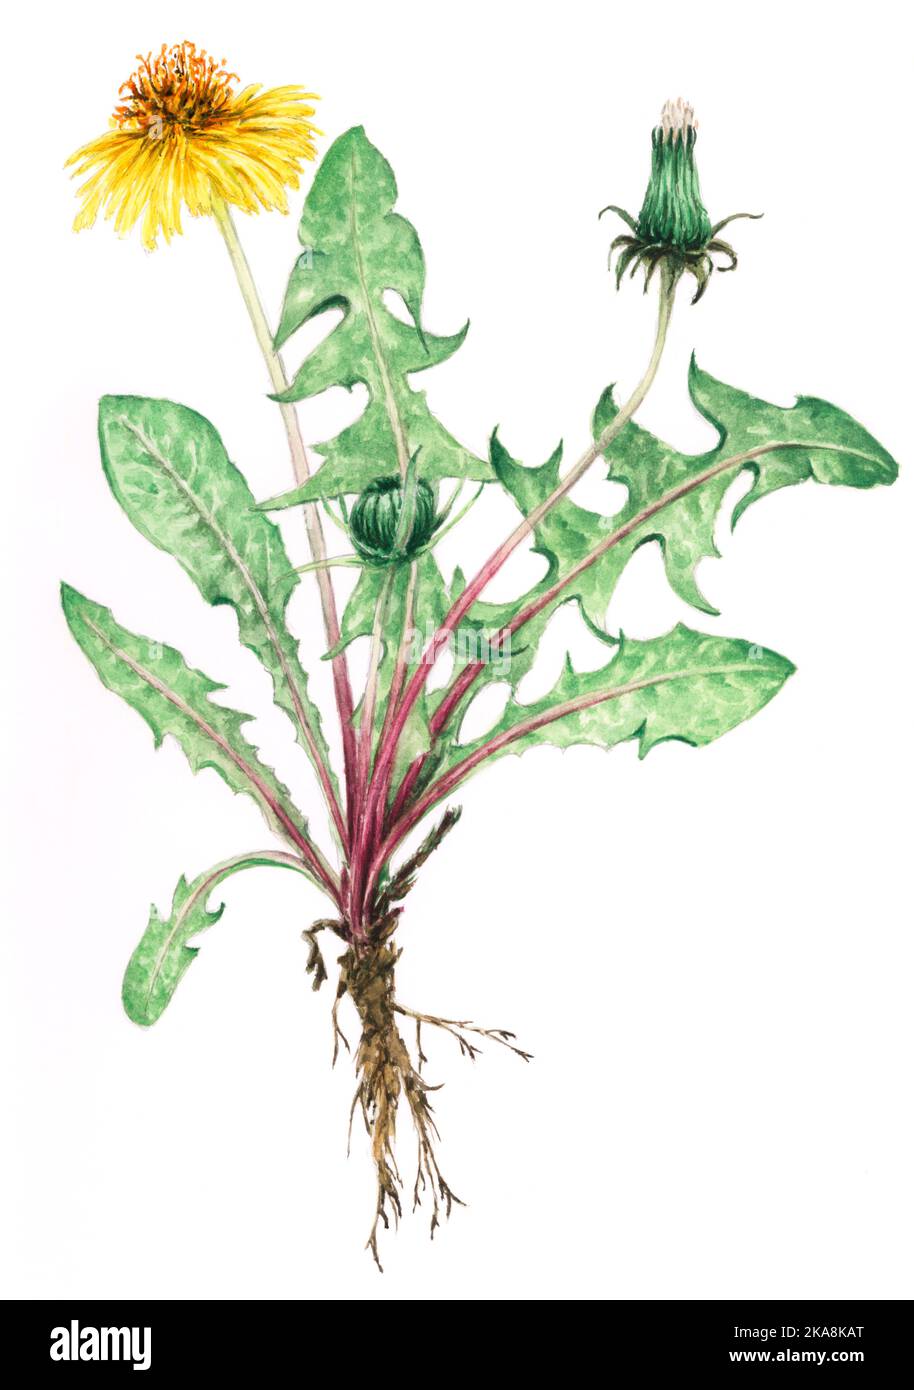 Löwinenpflanze (Taraxacum officinale) botanische Zeichnung. Aquarell auf Papier. Stockfoto